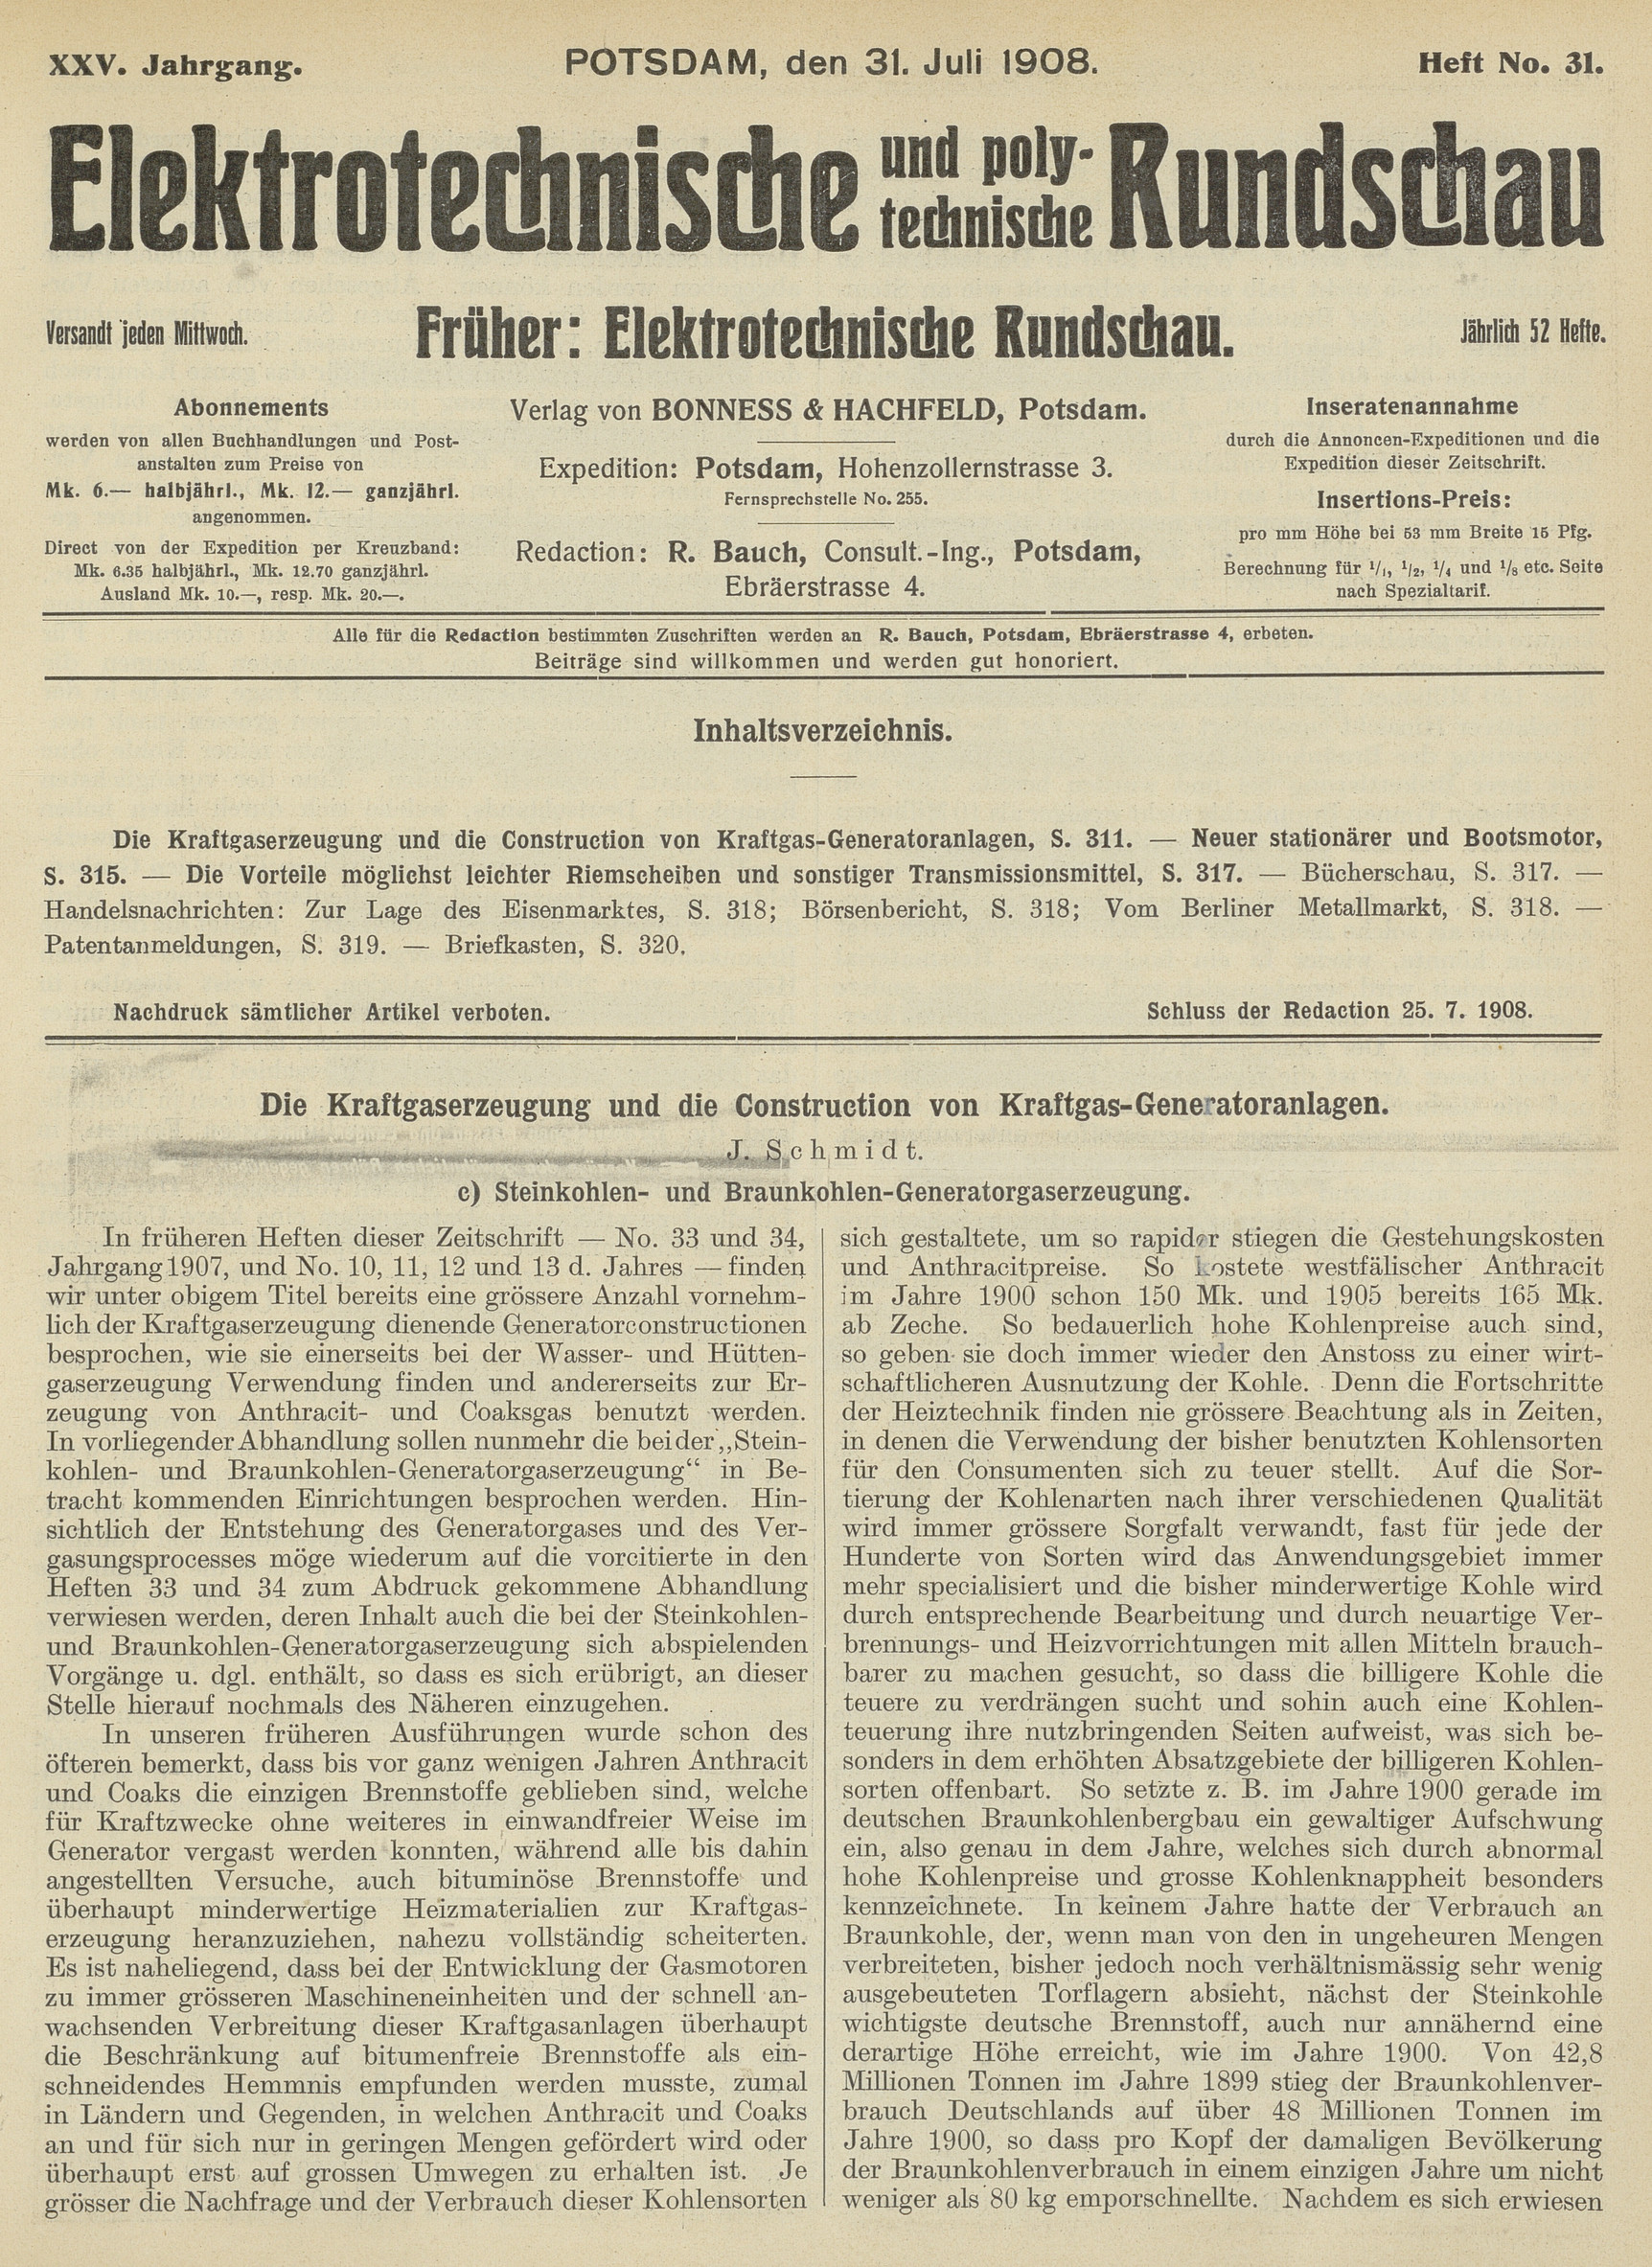 Elektrotechnische und polytechnische Rundschau, XXV. Jahrgang, Heft No. 31